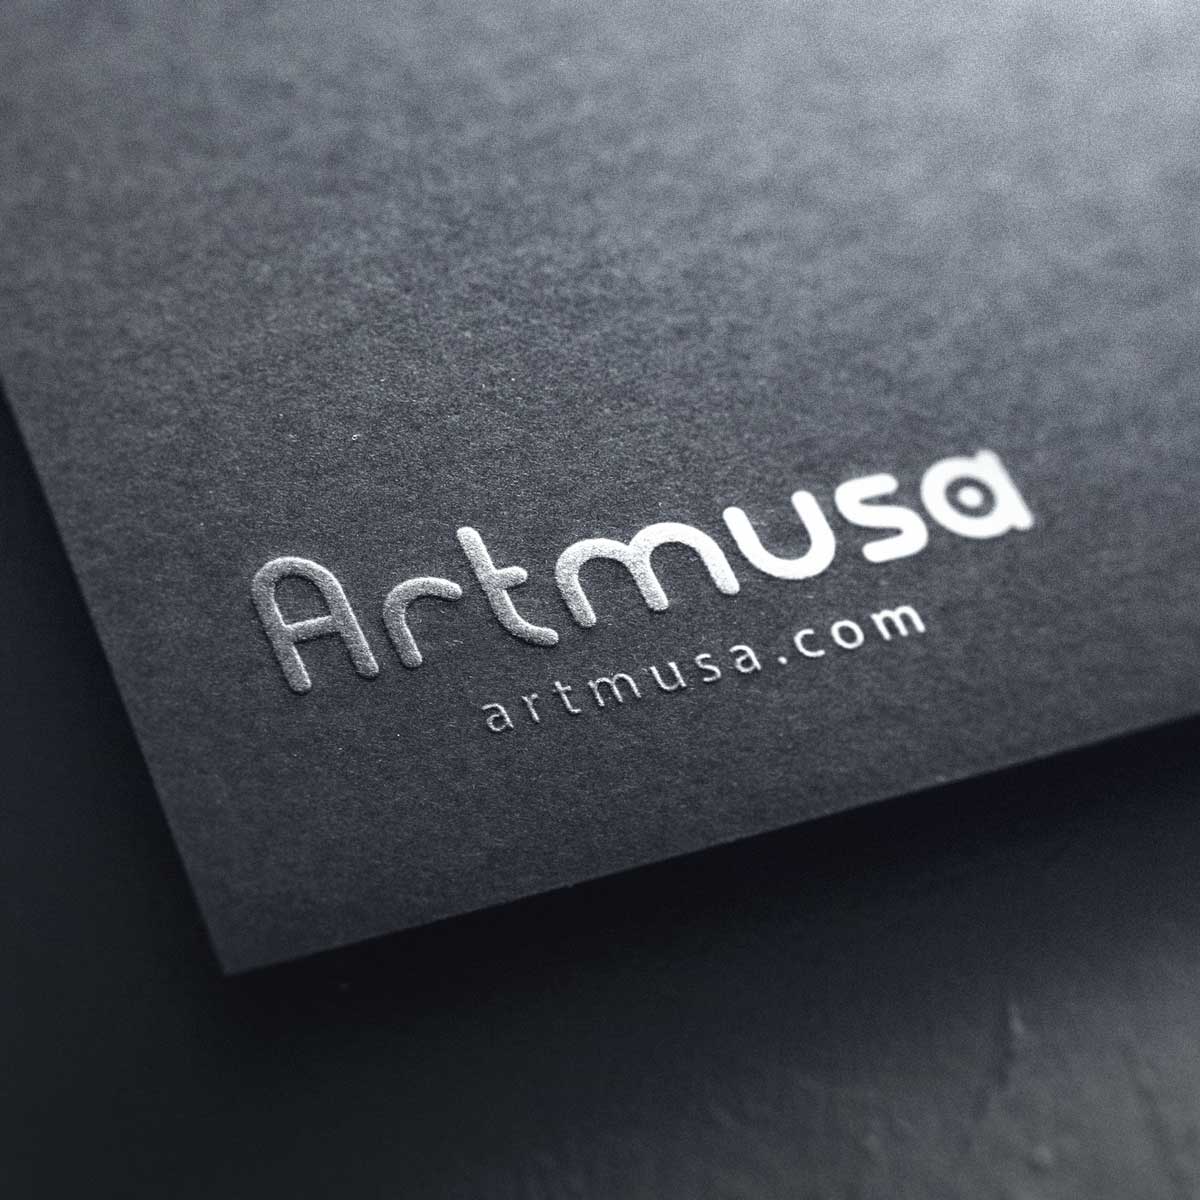 Artmusa – Arte e immagine